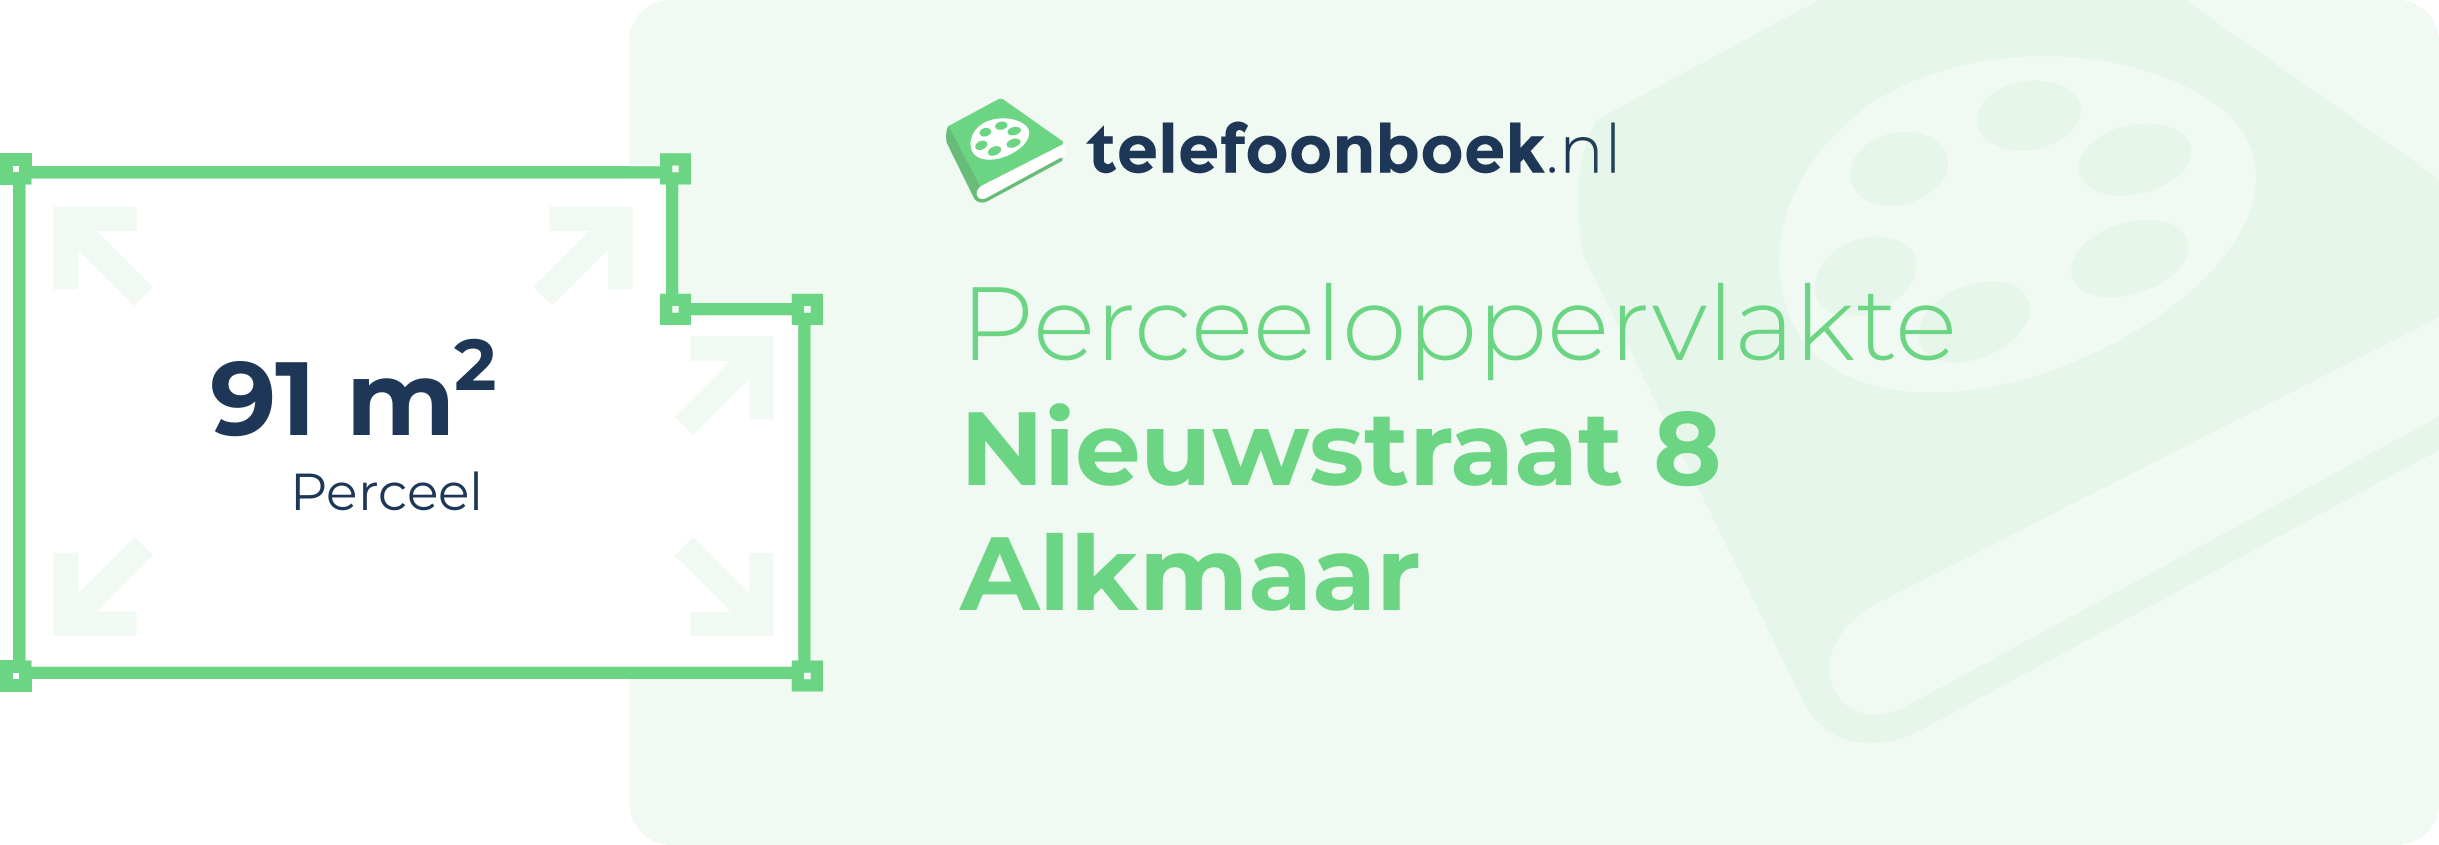 Perceeloppervlakte Nieuwstraat 8 Alkmaar